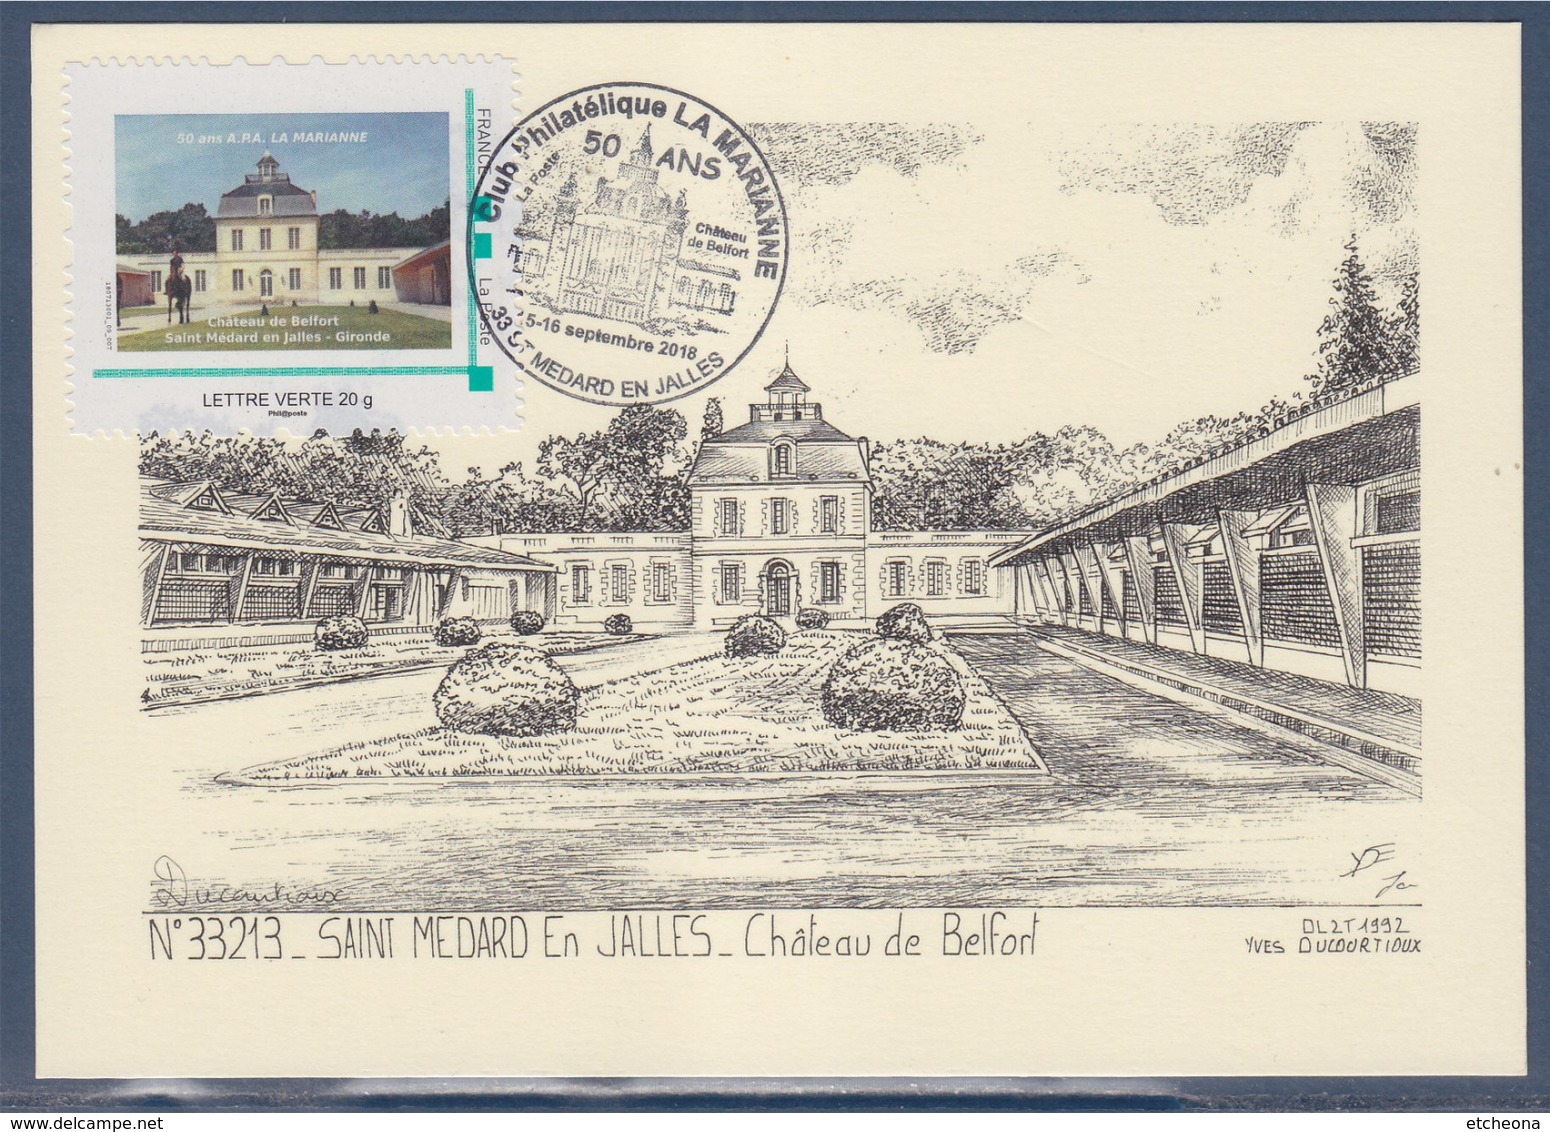 Château De Belfort Saint Médard En Jalles Gironde 50 Ans Club Philatélique La Marianne 15-16.9.18 Cadre Philaposte LV - Covers & Documents